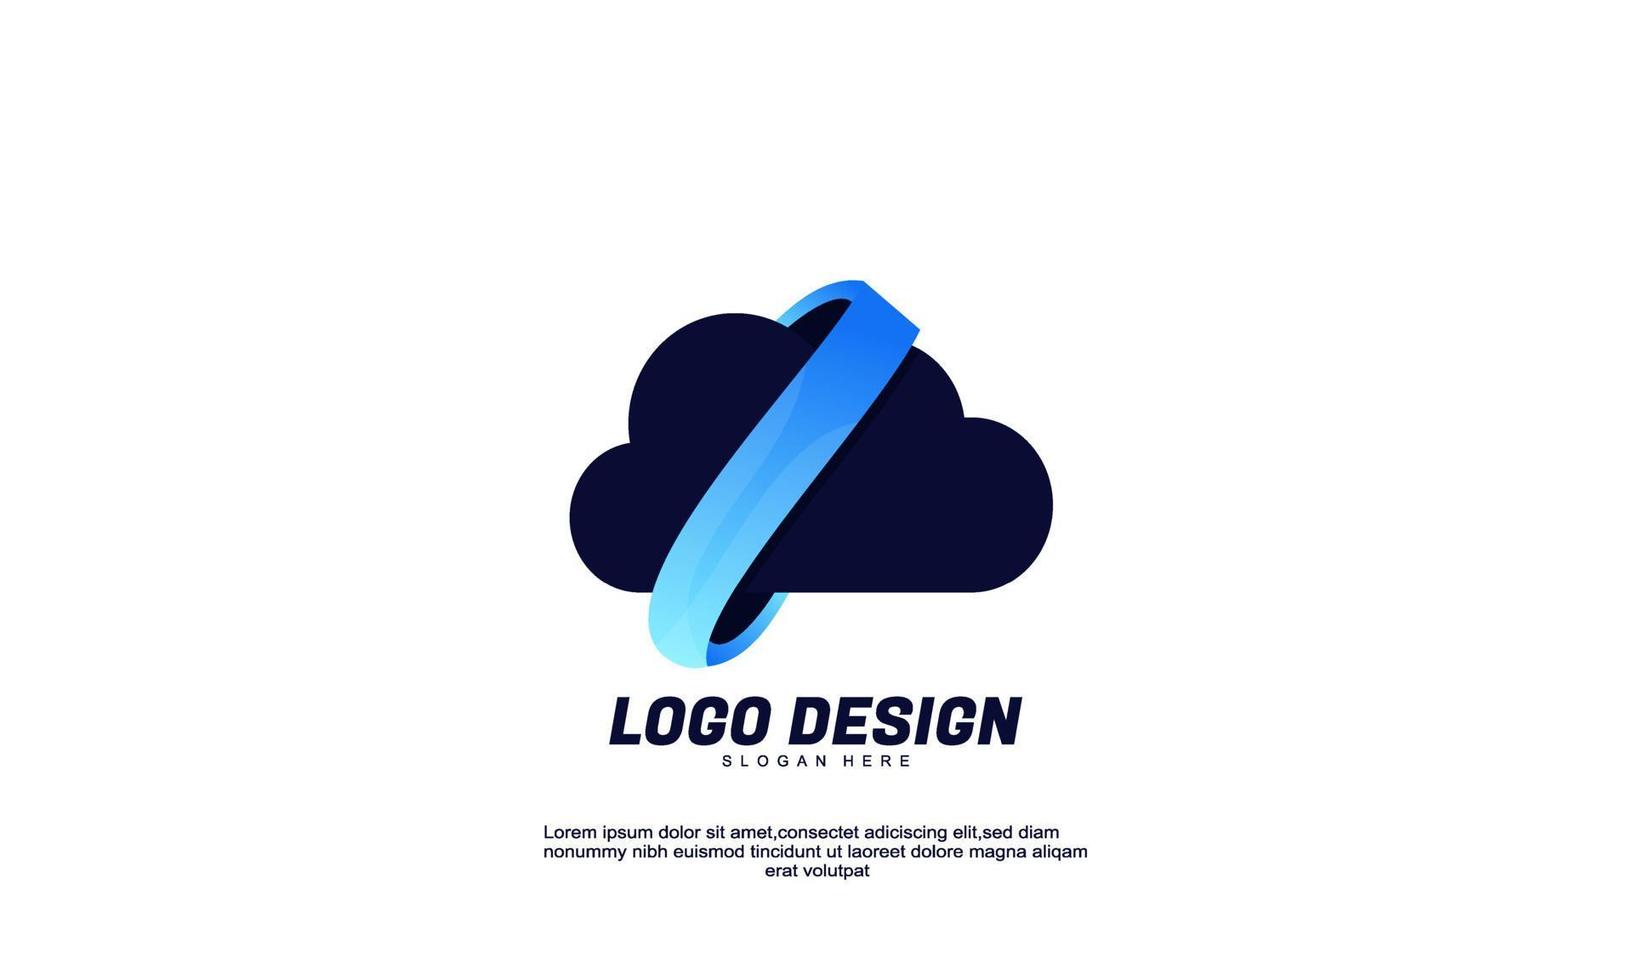 vettore d'archivio astratto creativo logo nuvola per affari o società modello di progettazione di colore sfumato